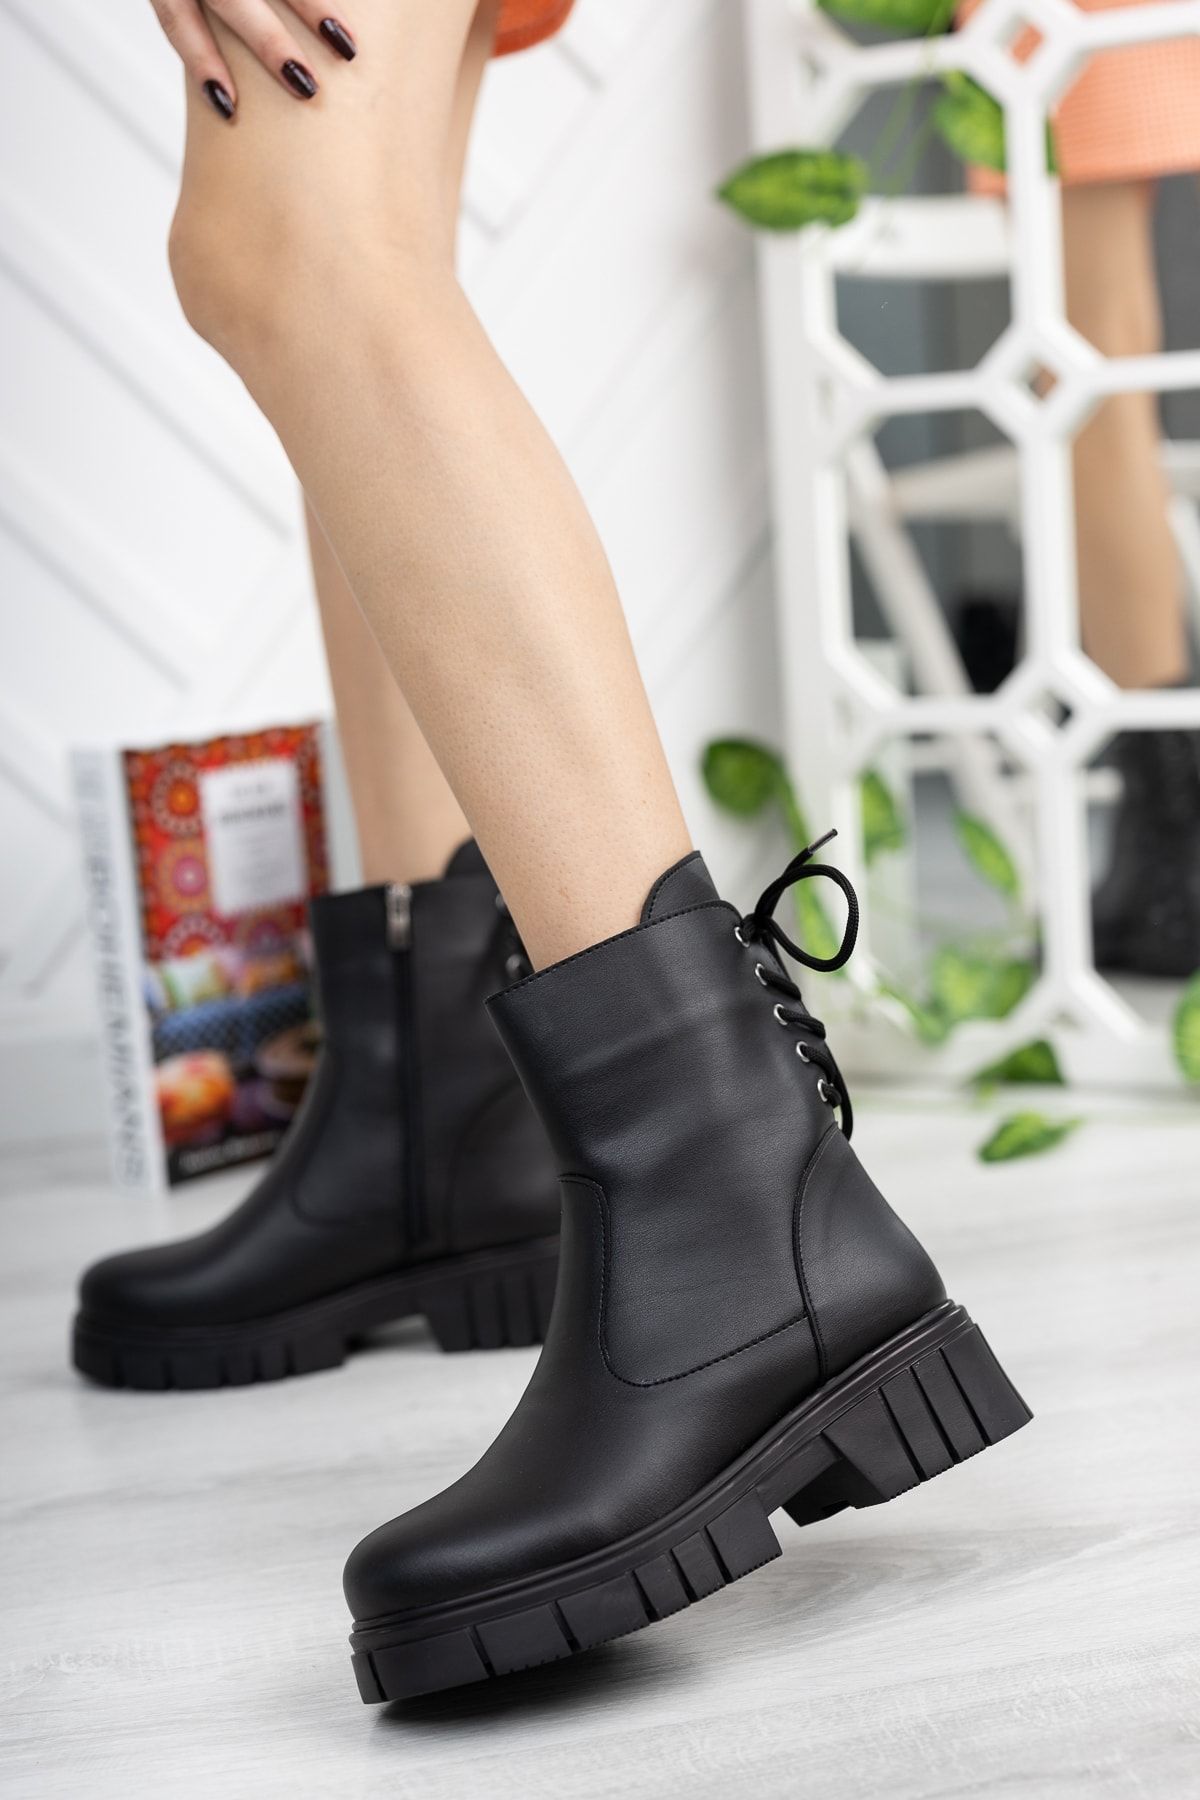 sedora shoes Kadın Topuktan Bağcıklı Siyah Bot& Bootie Postal Kalın Taban